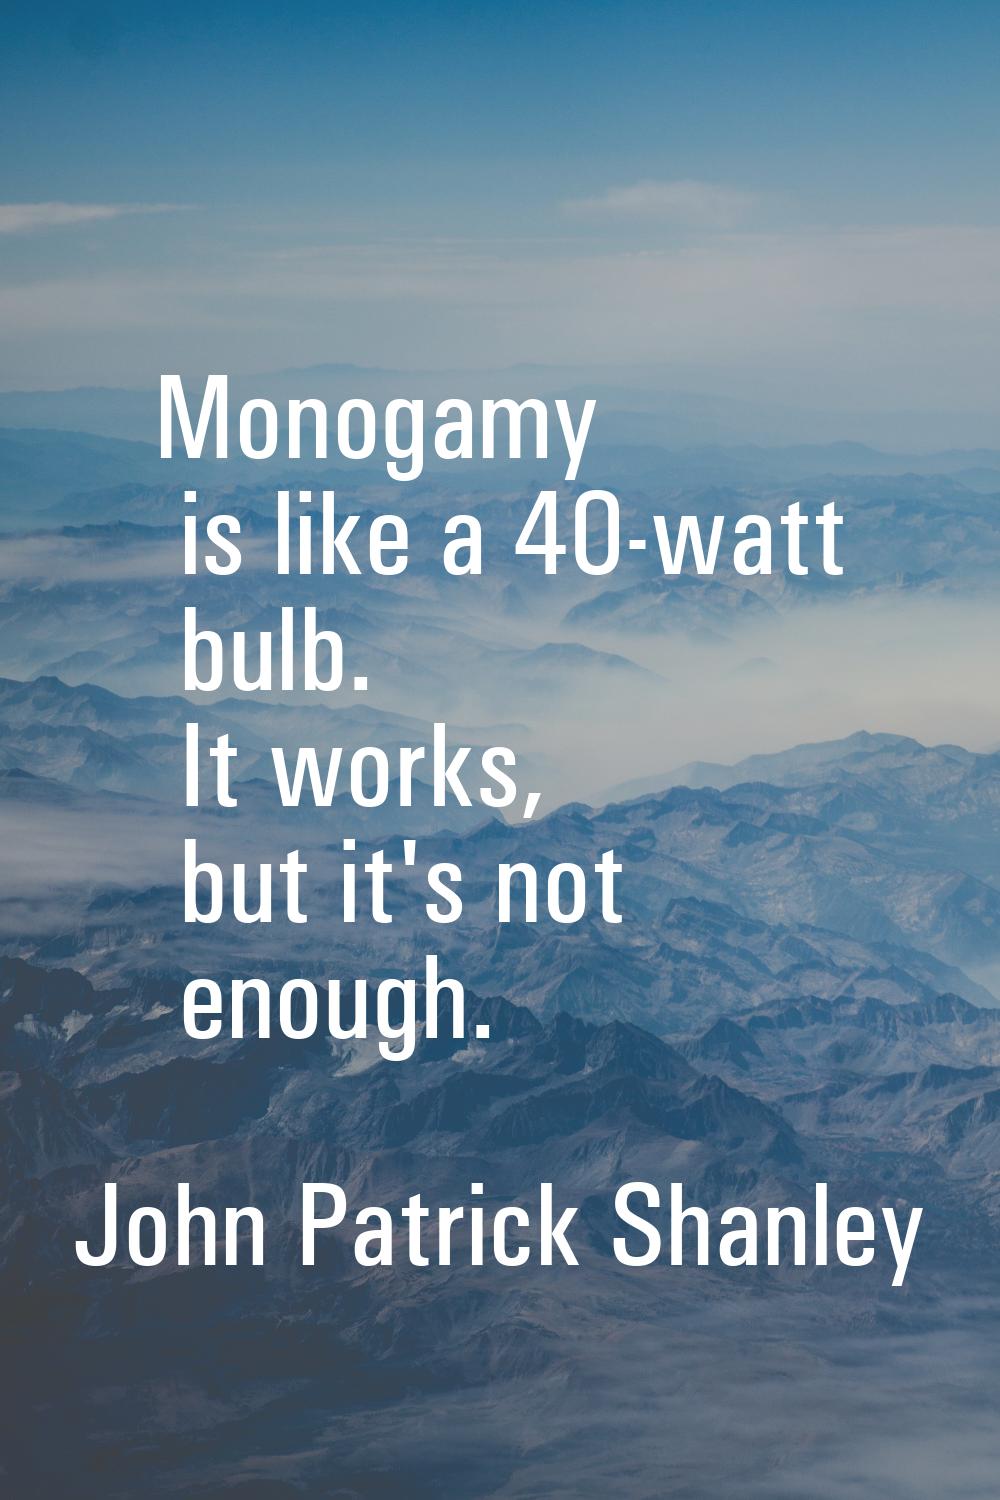 Monogamy is like a 40-watt bulb. It works, but it's not enough.